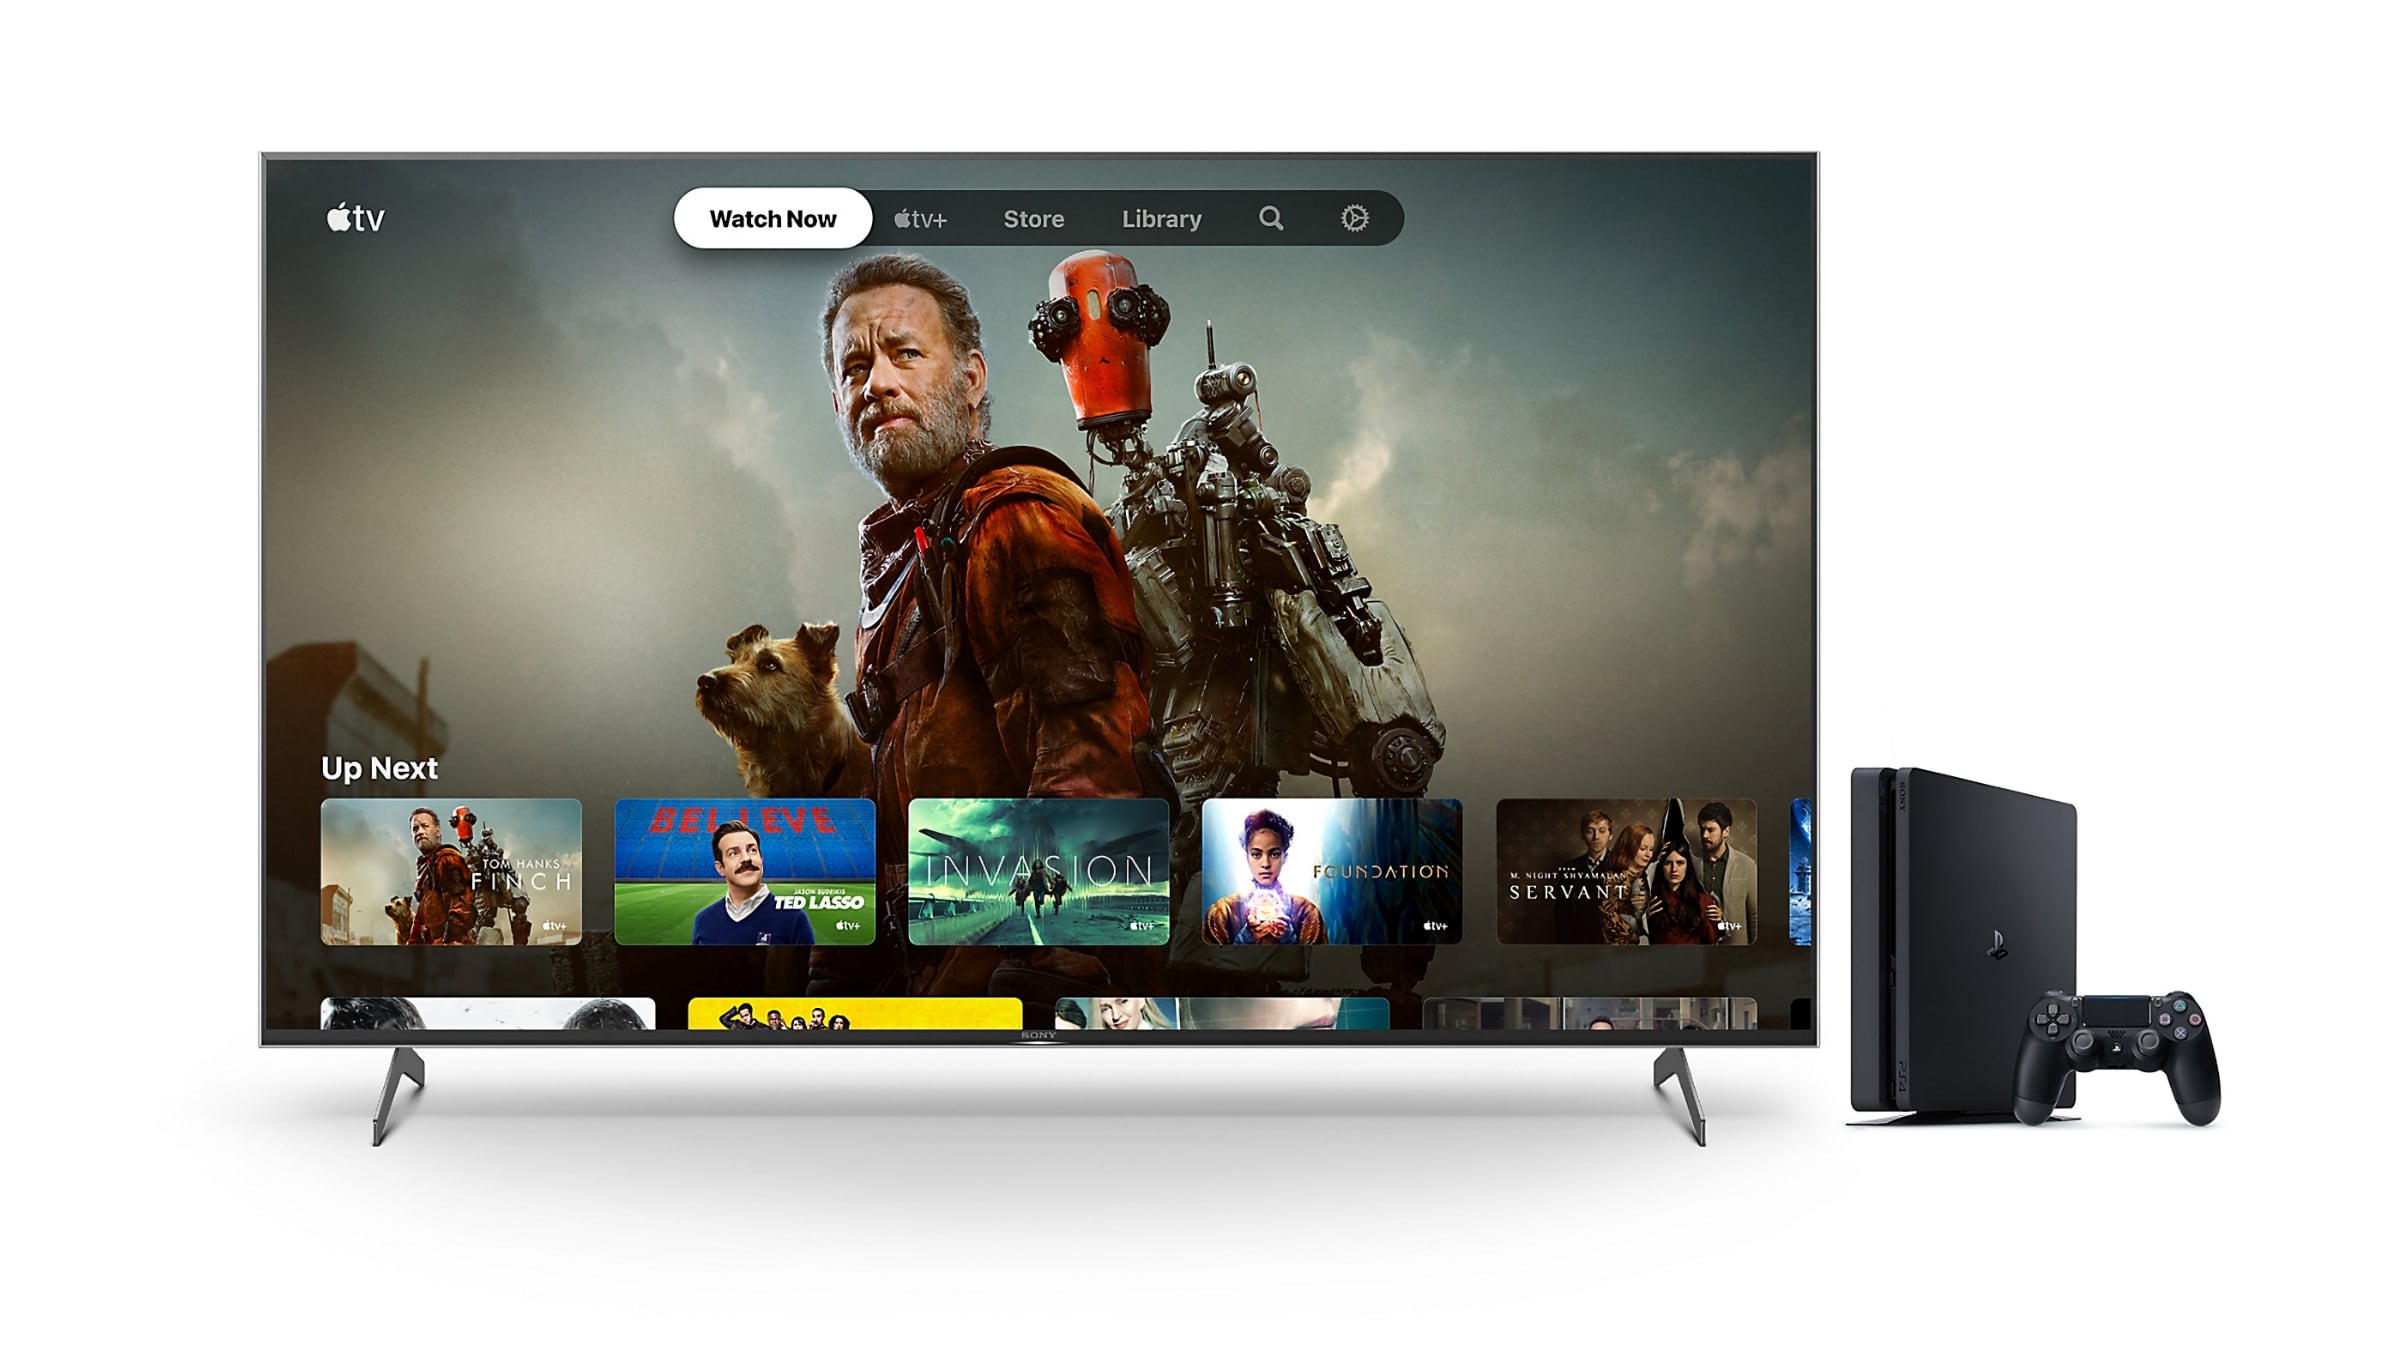 Forsømme Fellow Blive kold Sony udvider tilbud om 6 måneders gratis Apple TV+ til PS4-ejere -  FlatpanelsDK